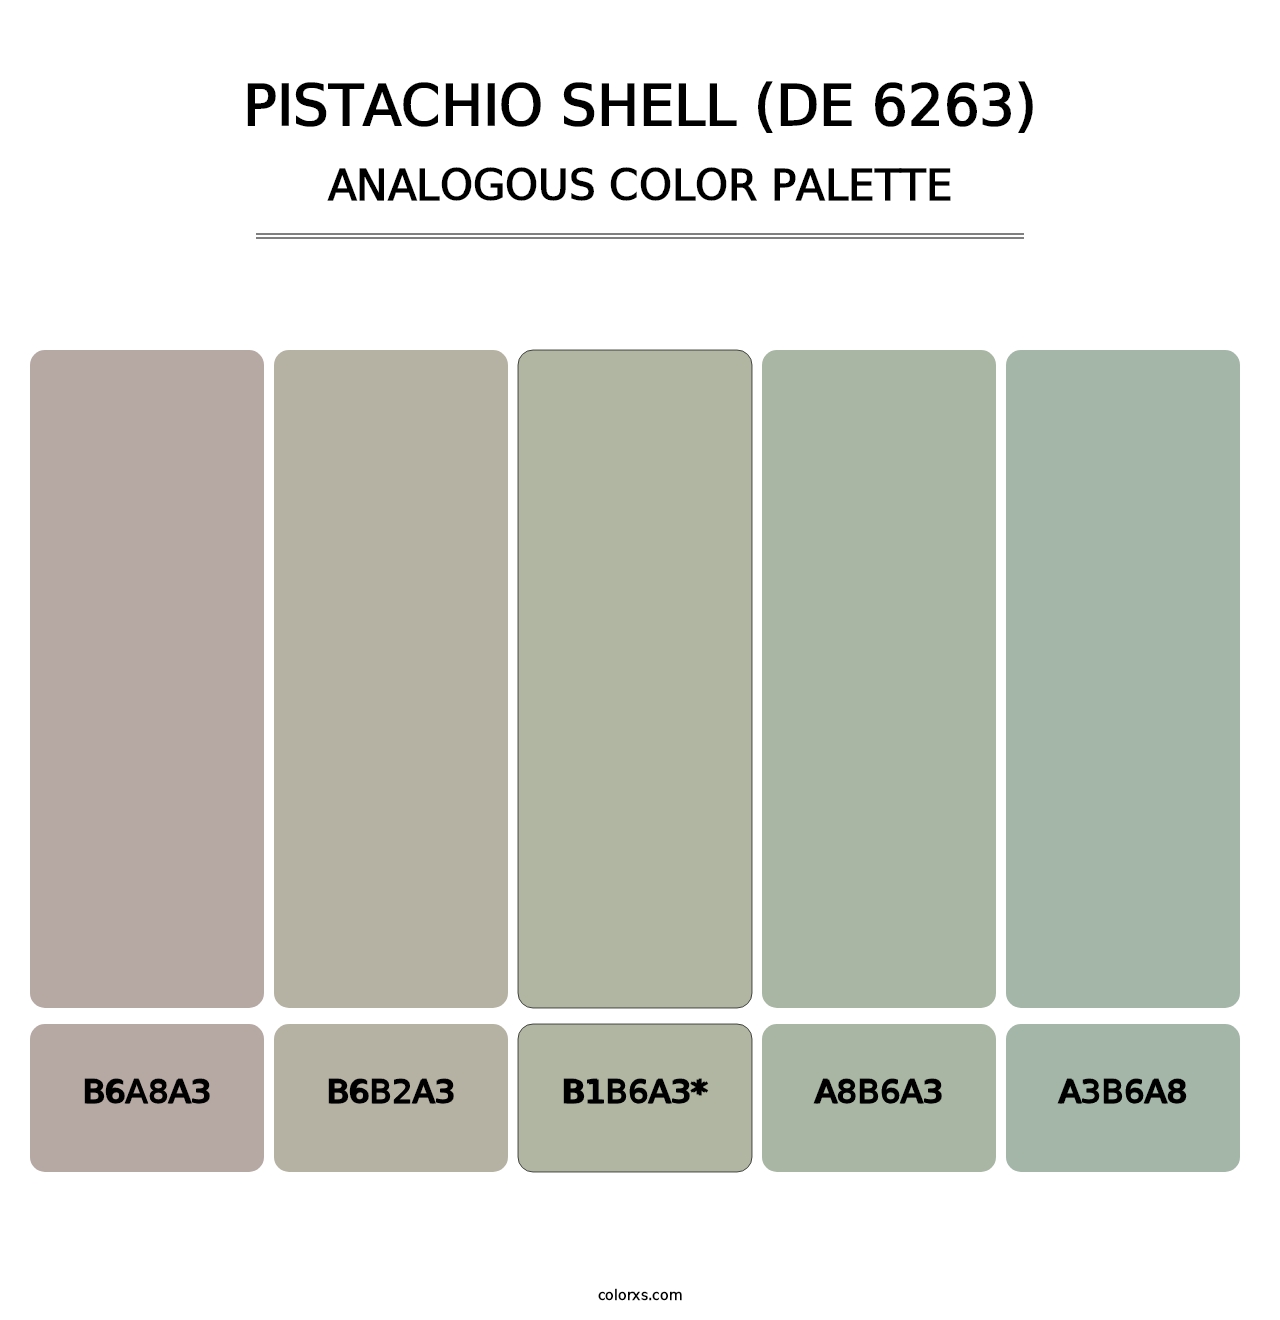 Pistachio Shell (DE 6263) - Analogous Color Palette